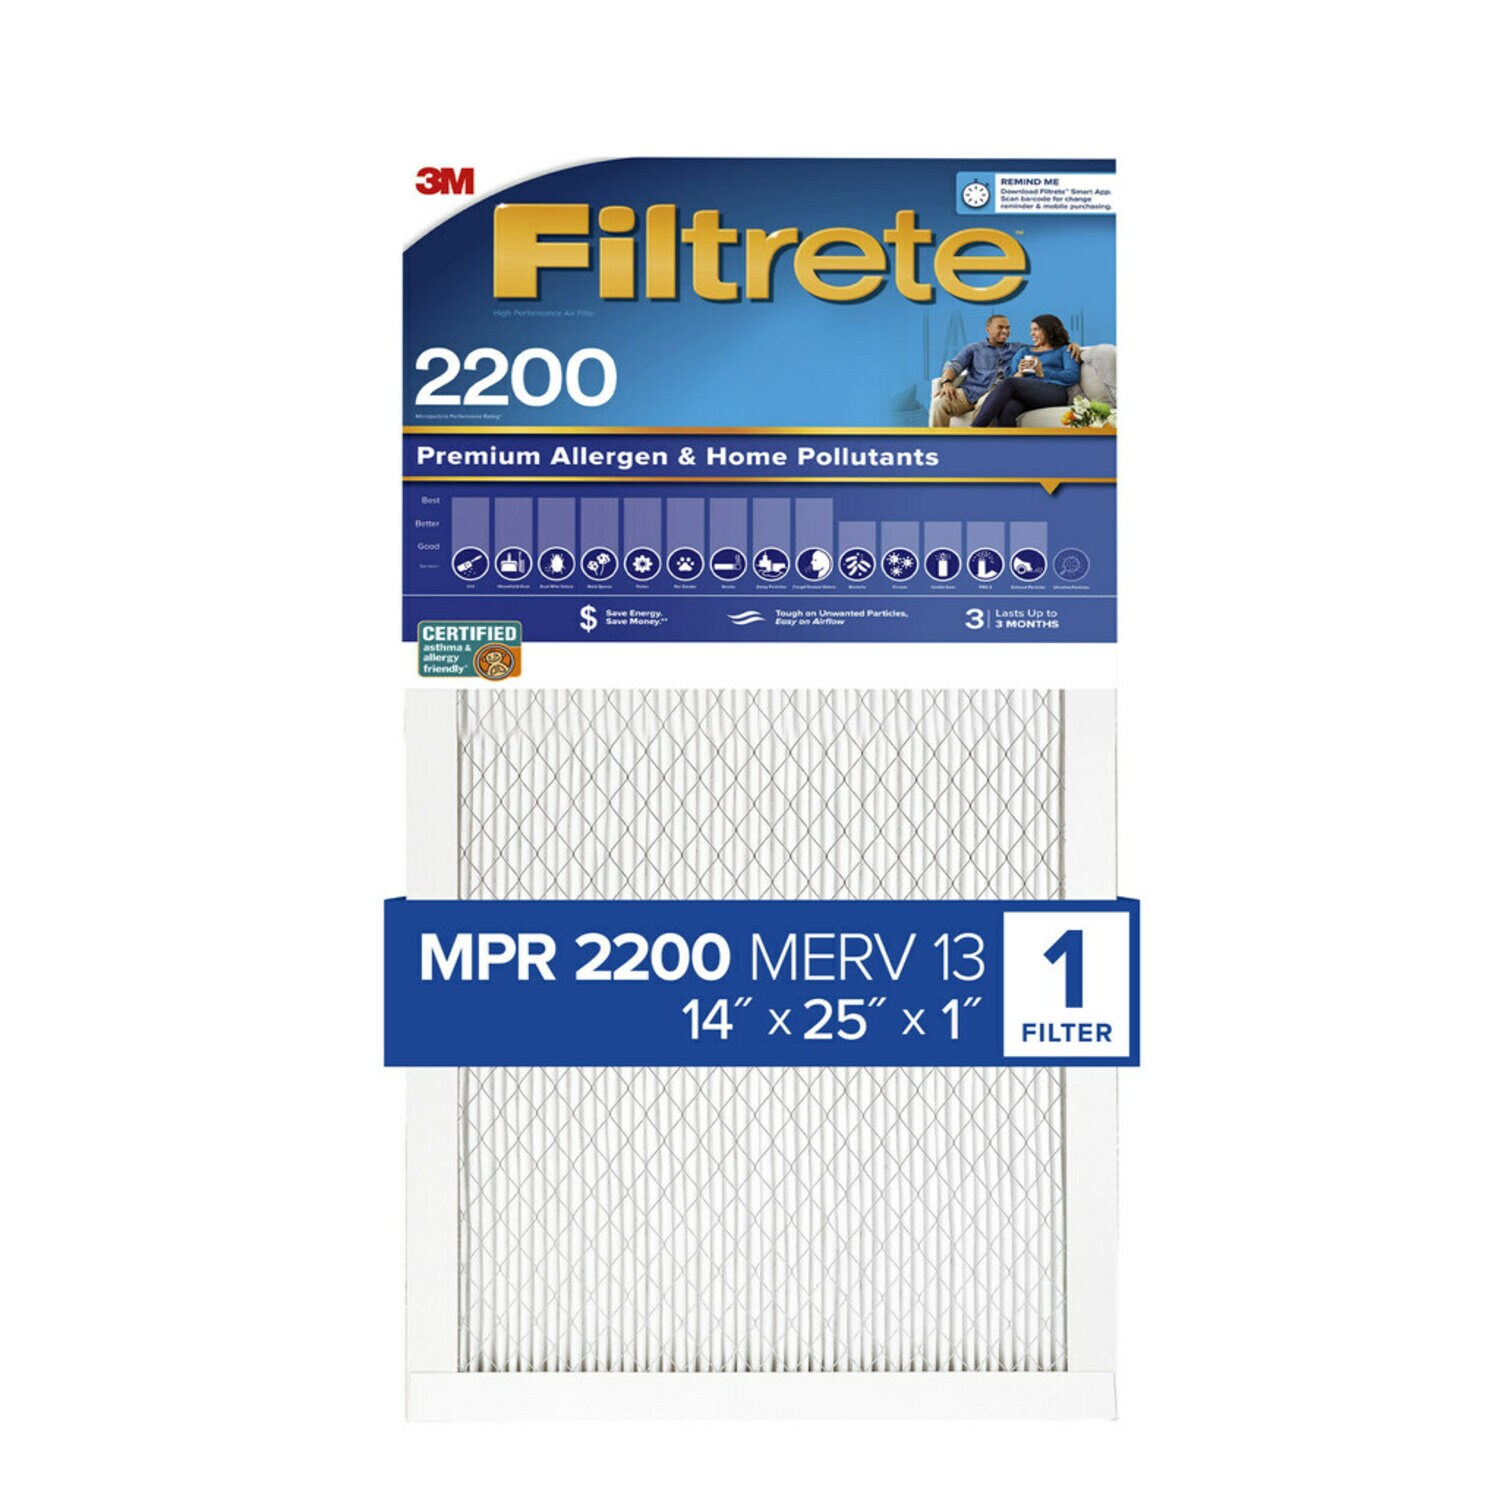 7100262895 - Filtrete High Performance Air Filter 2200 MPR EA04-4, 14 in x 25 in x 1 in (35.5 cm x 63.5 cm x 2.5 cm)